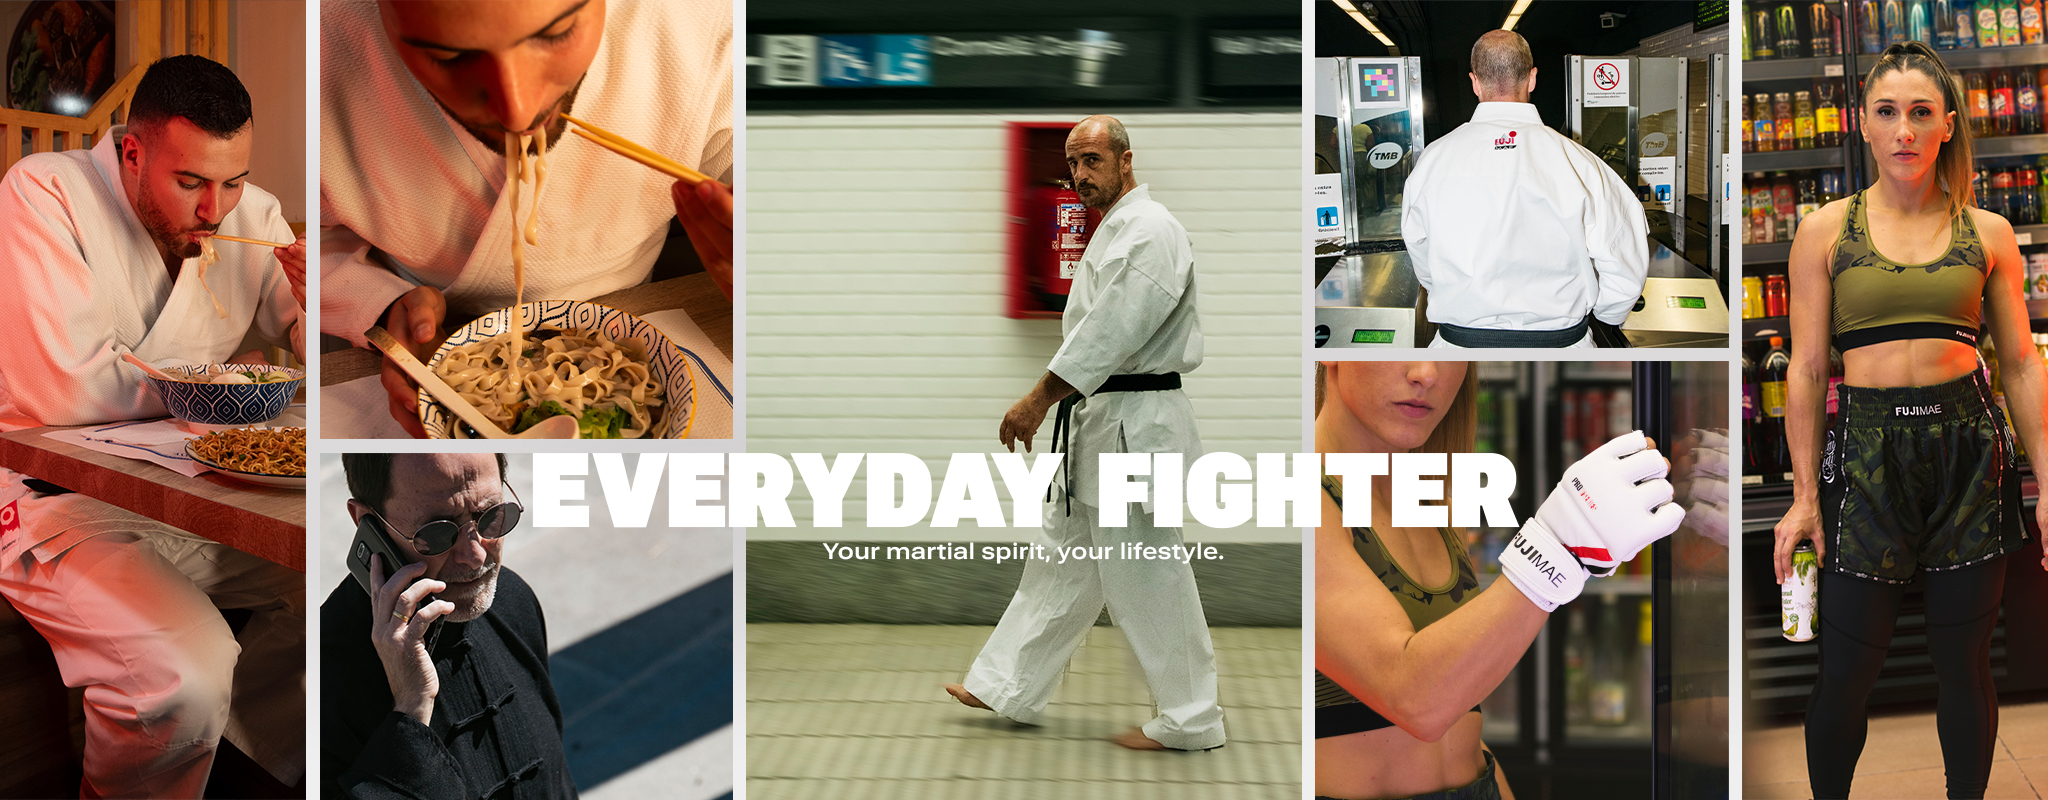 DESK_EVERYDAY_FIGHTER_Subway routine_EN